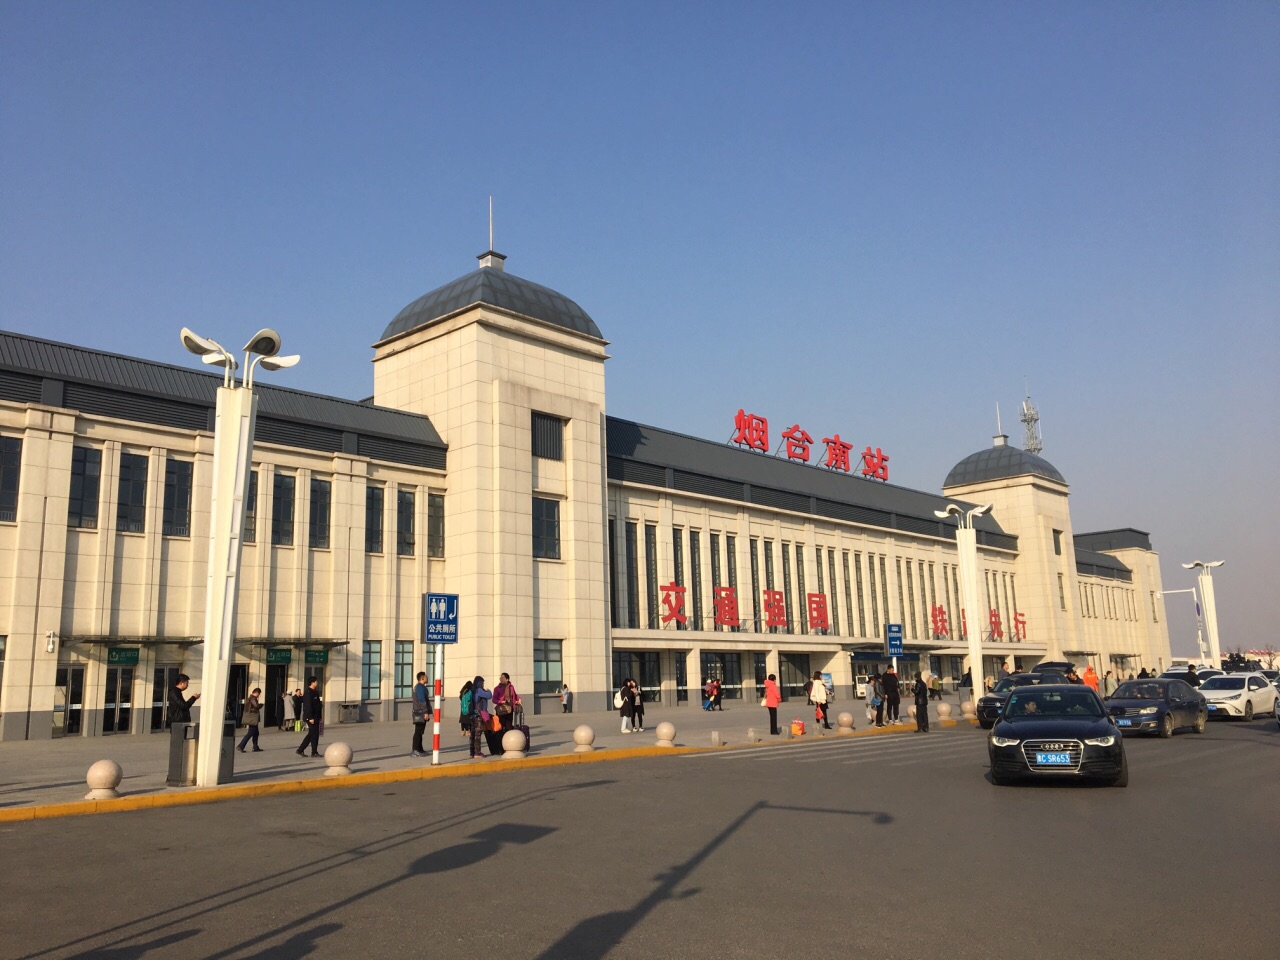 【携程攻略】烟台南站,从青岛北站到烟台南站有高铁